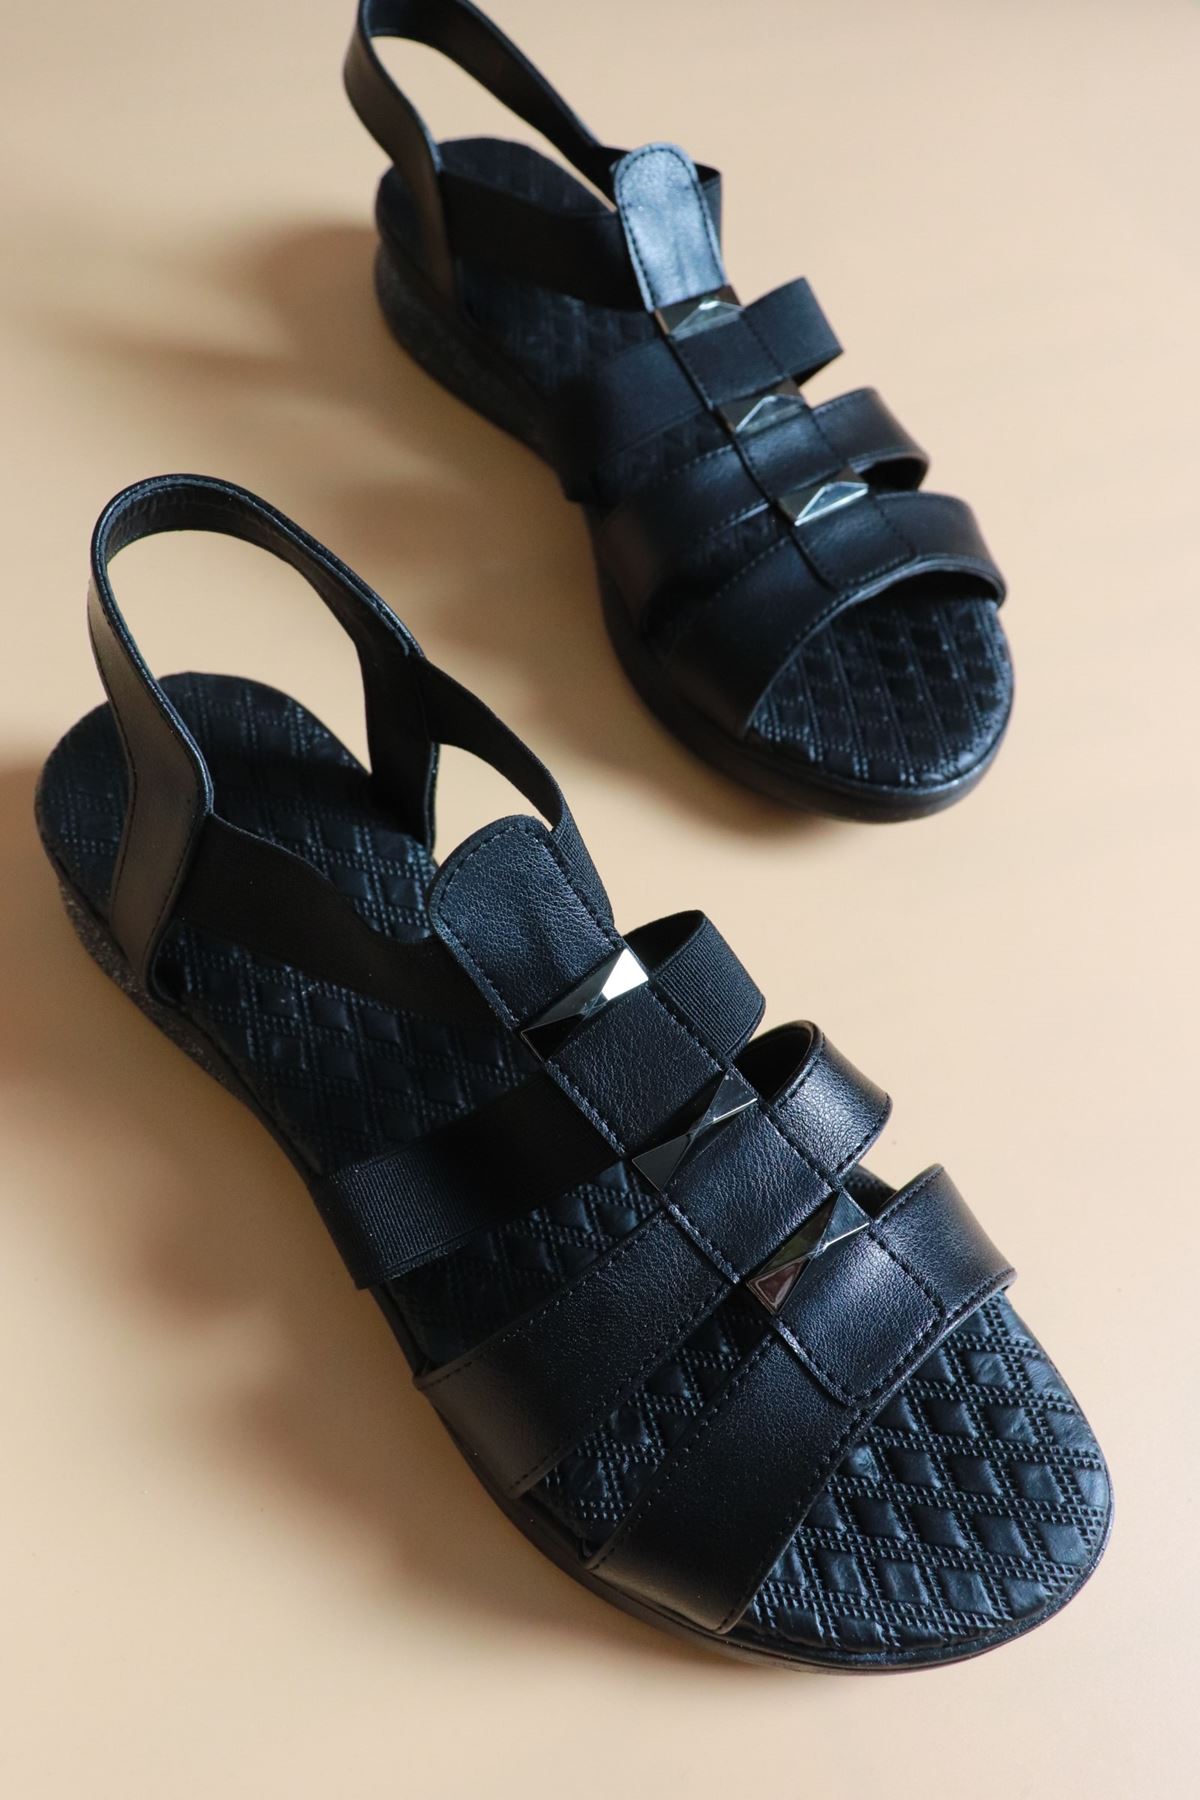 Trendayakkabı - Siyah Kadın Sandalet LİHTS